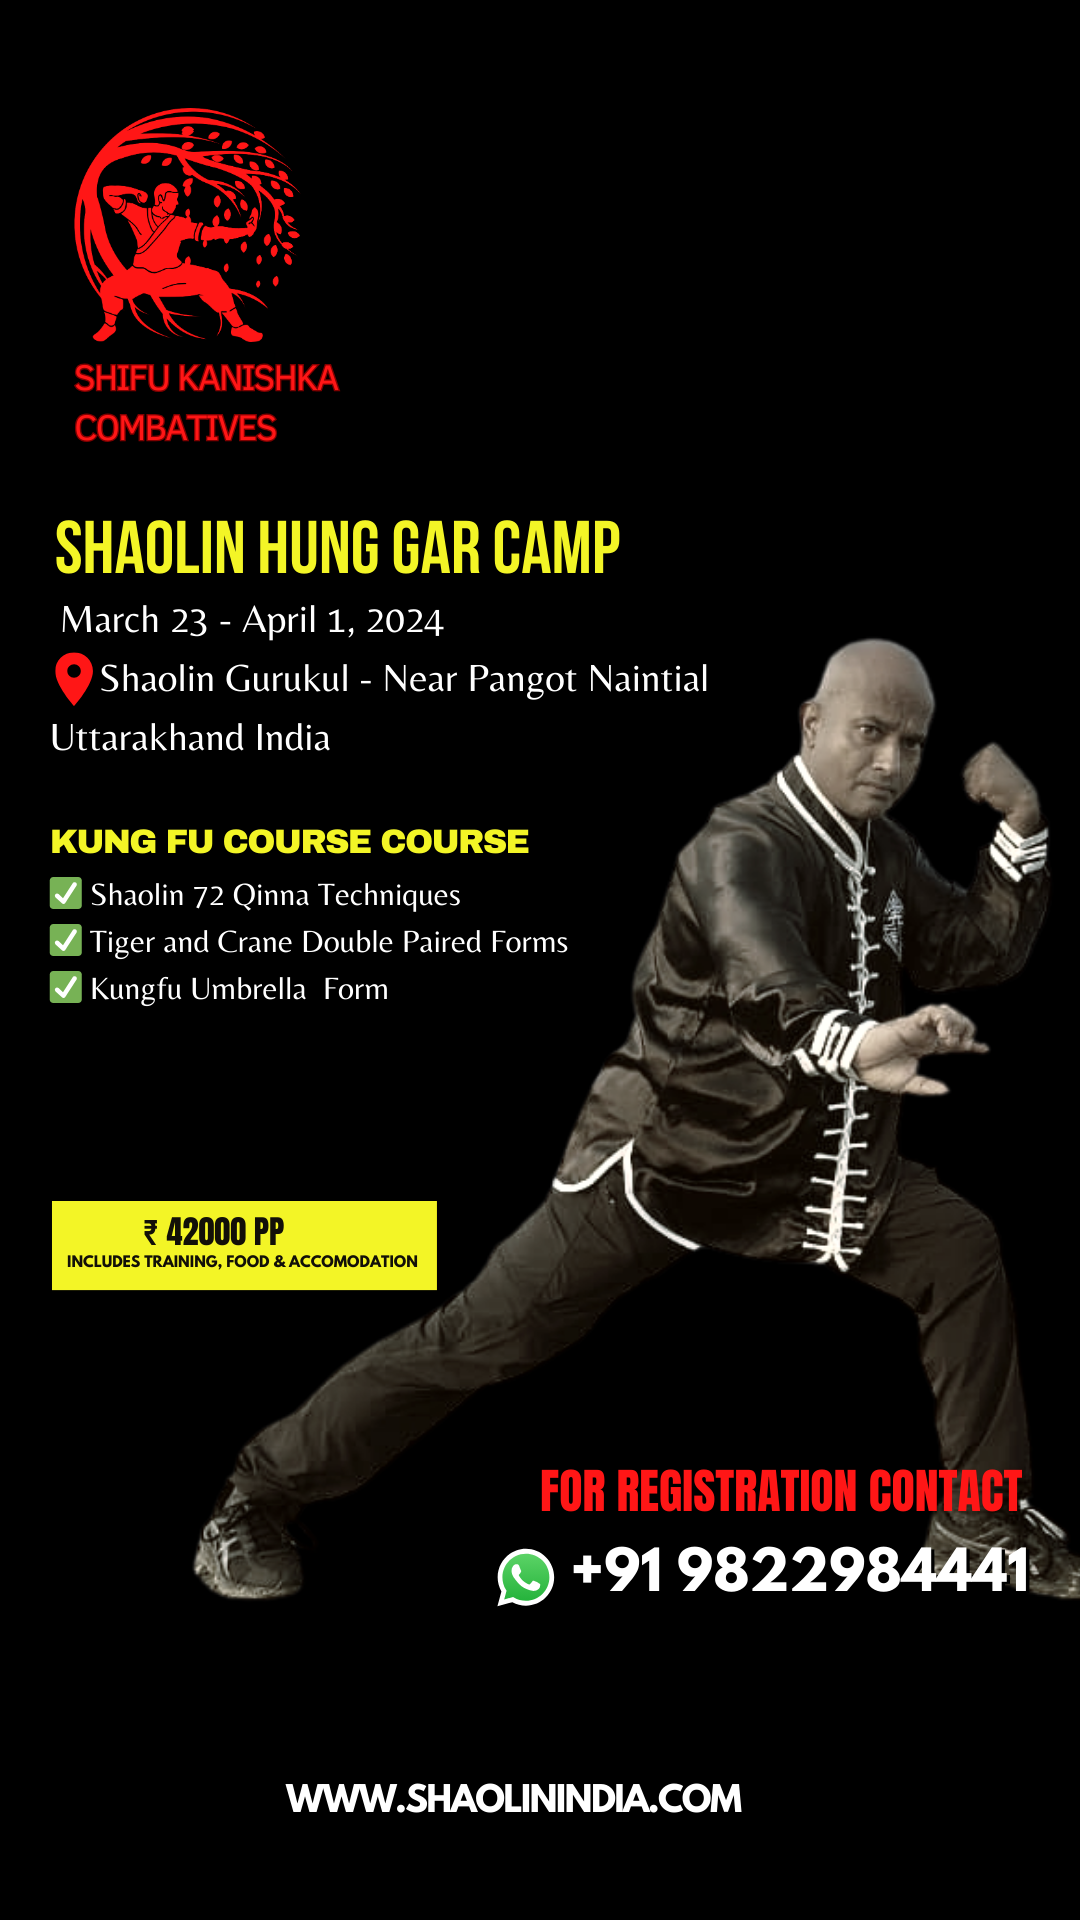 Shaolin hunggar kung fu india